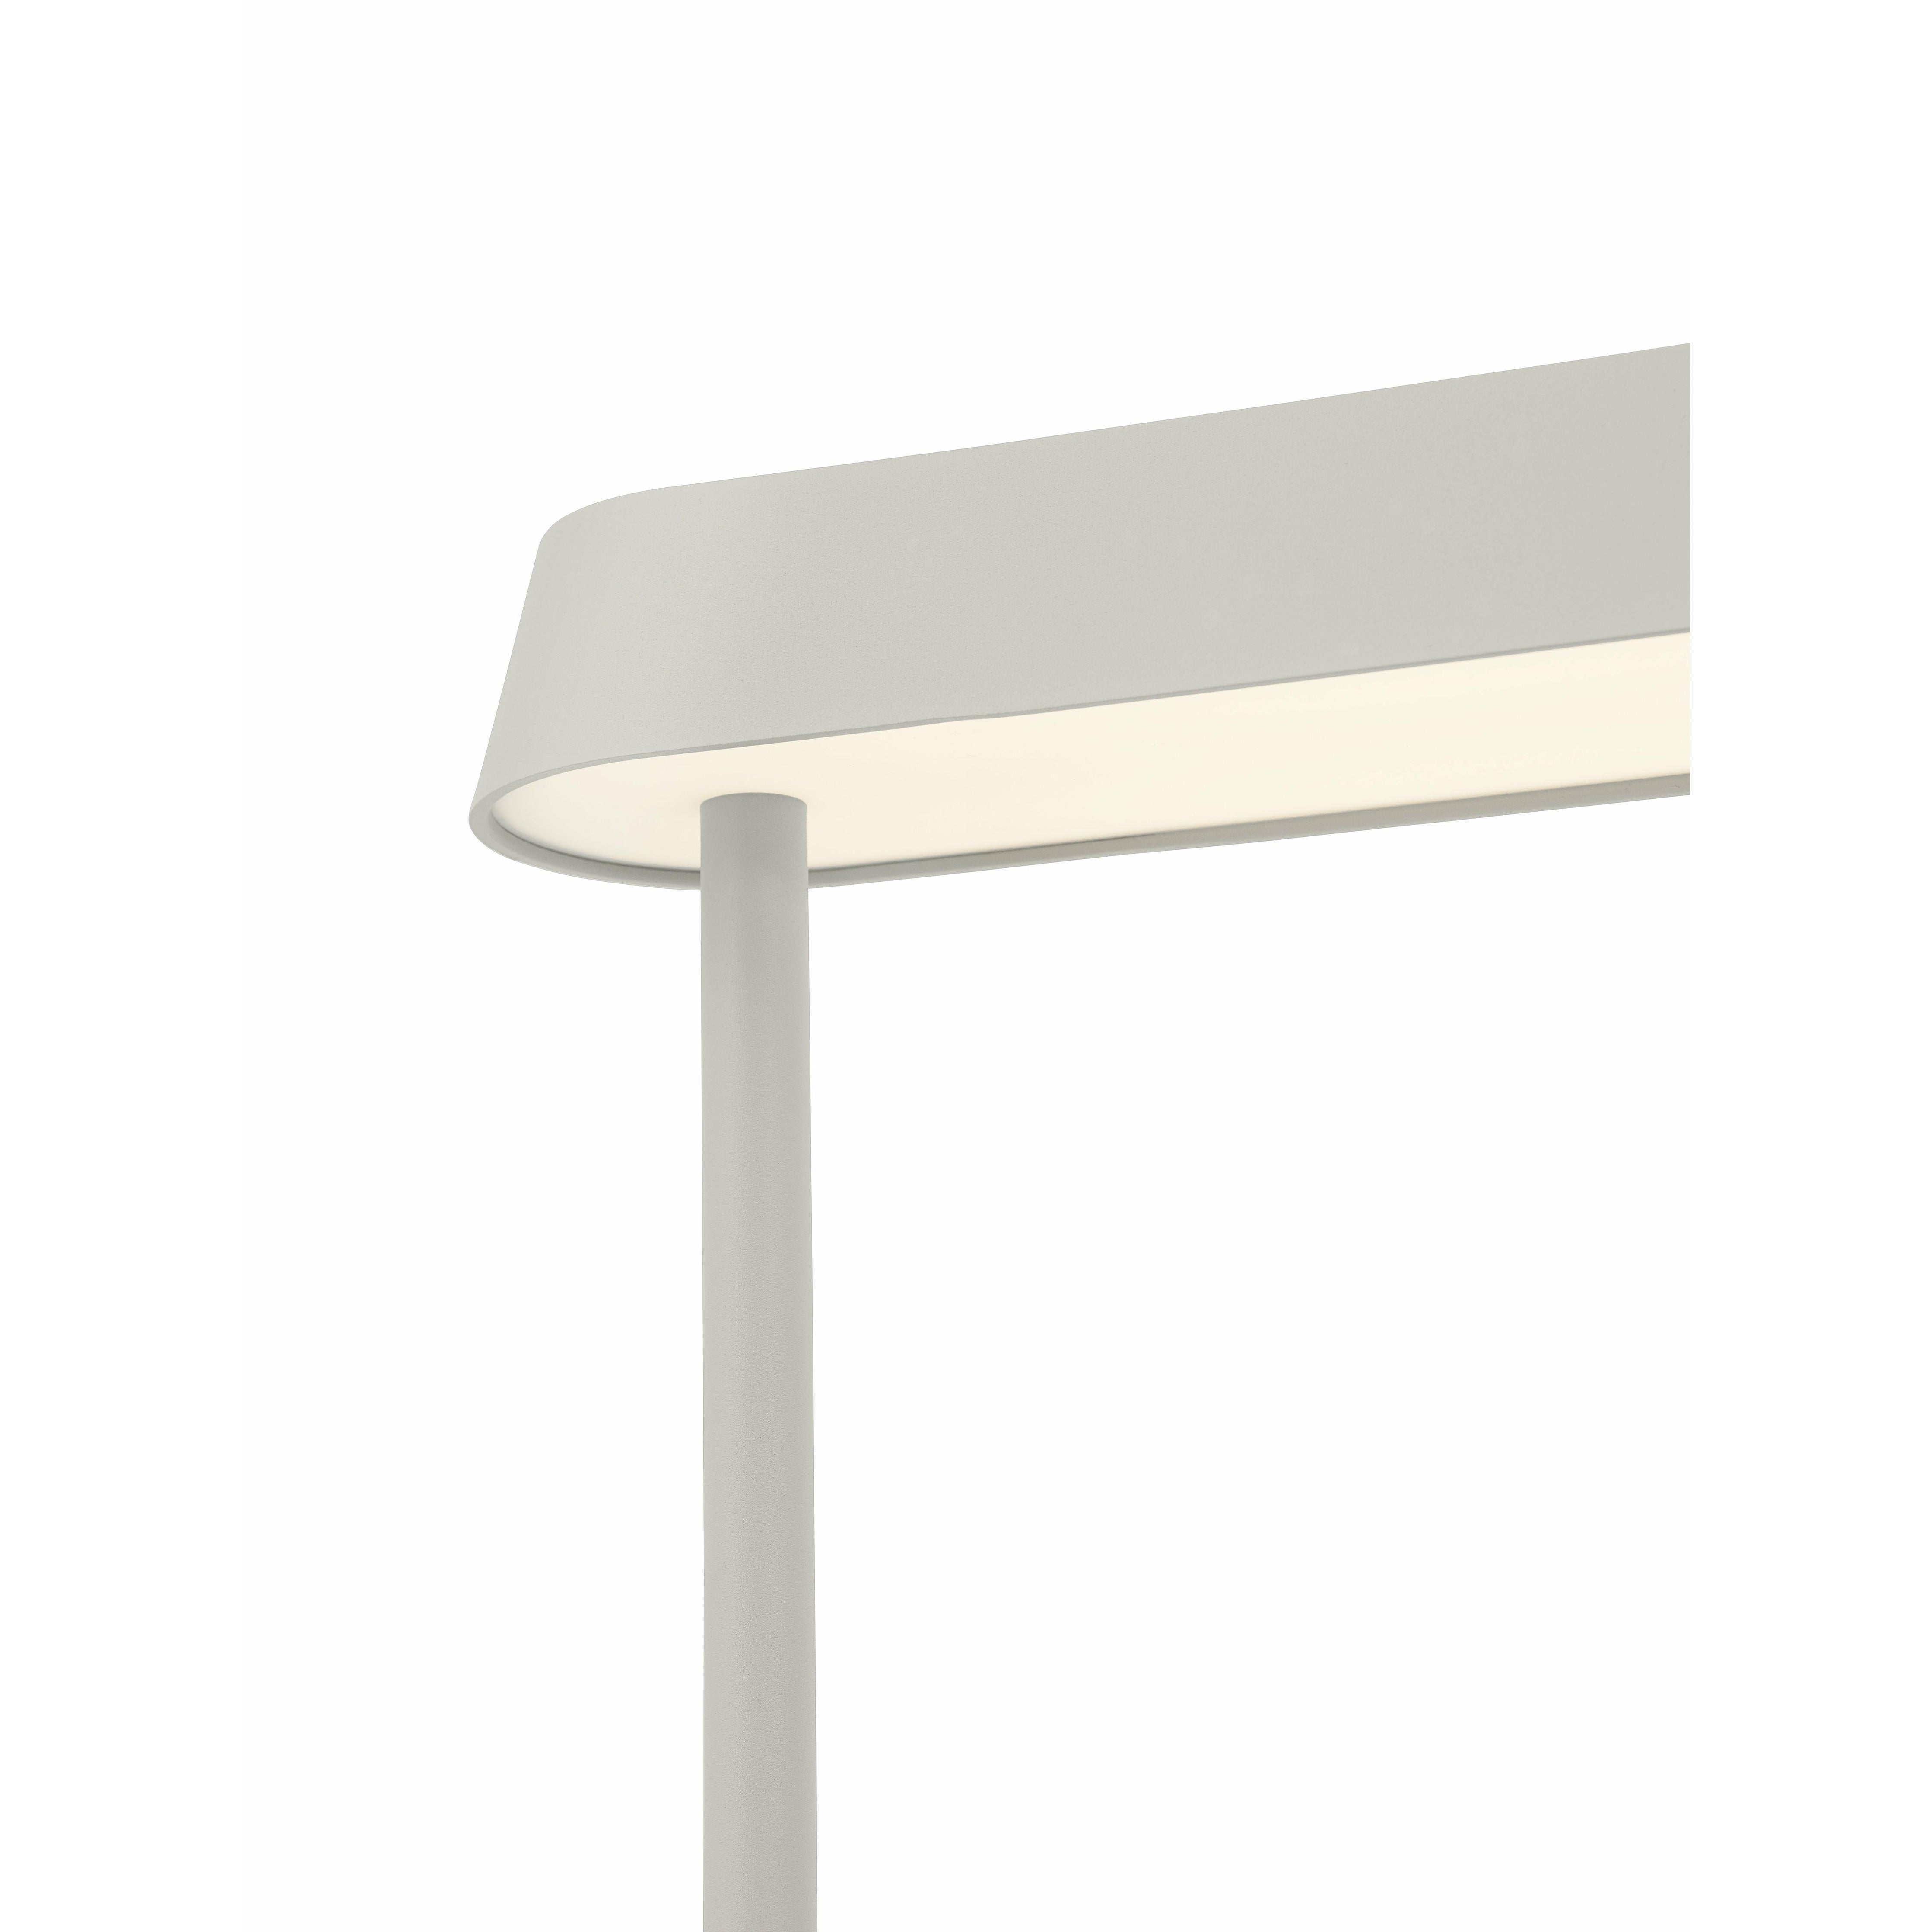 Lineární namontovaná lampa Muuto 209x71 cm, šedá